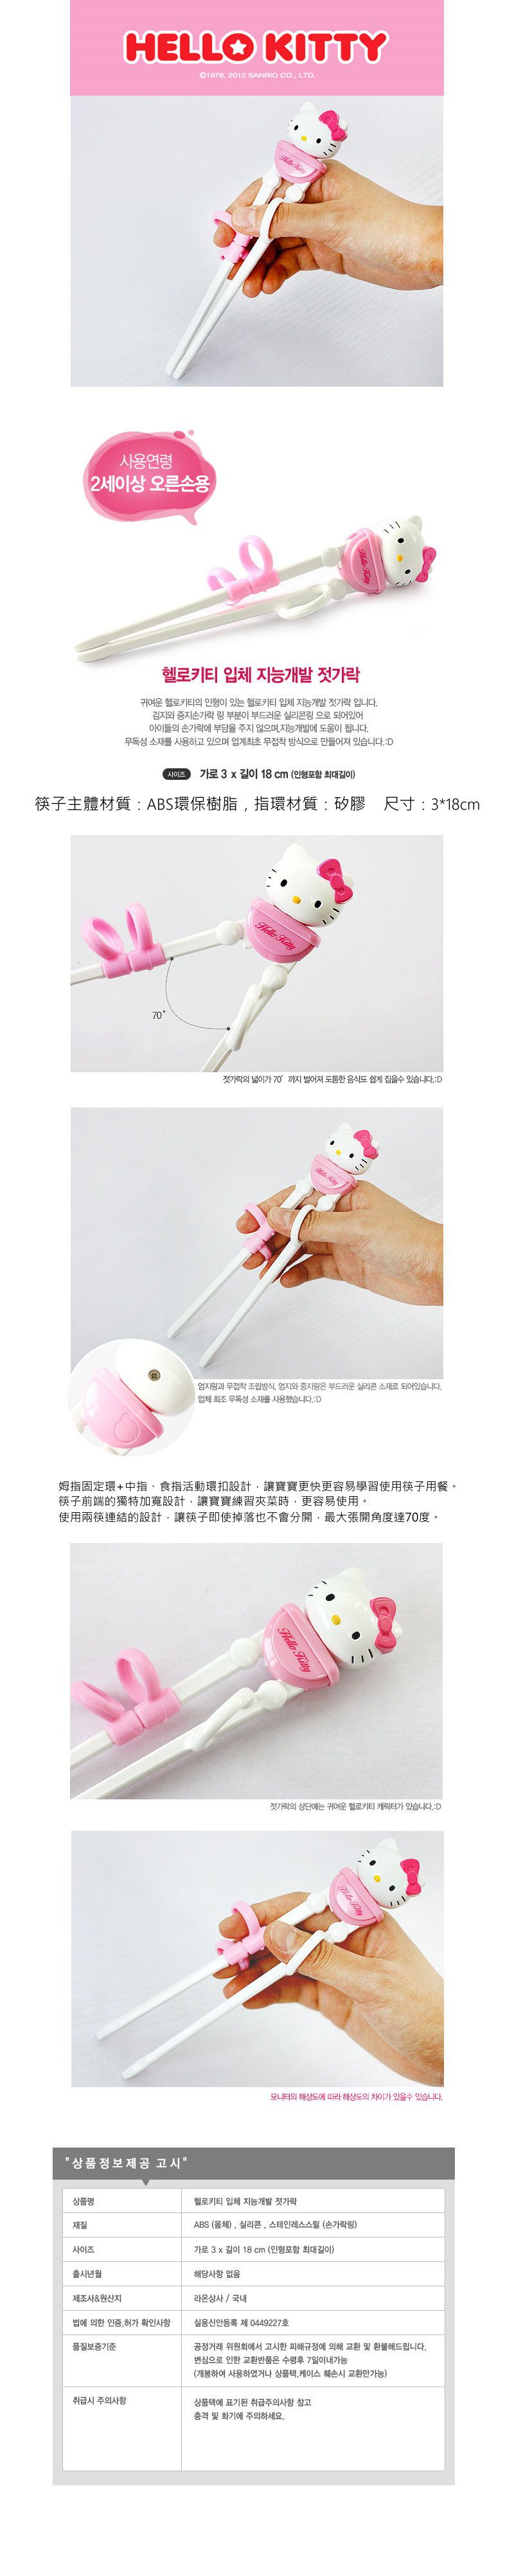 韓國製Hello Kitty兒童學習筷-右手用(2歲以上)